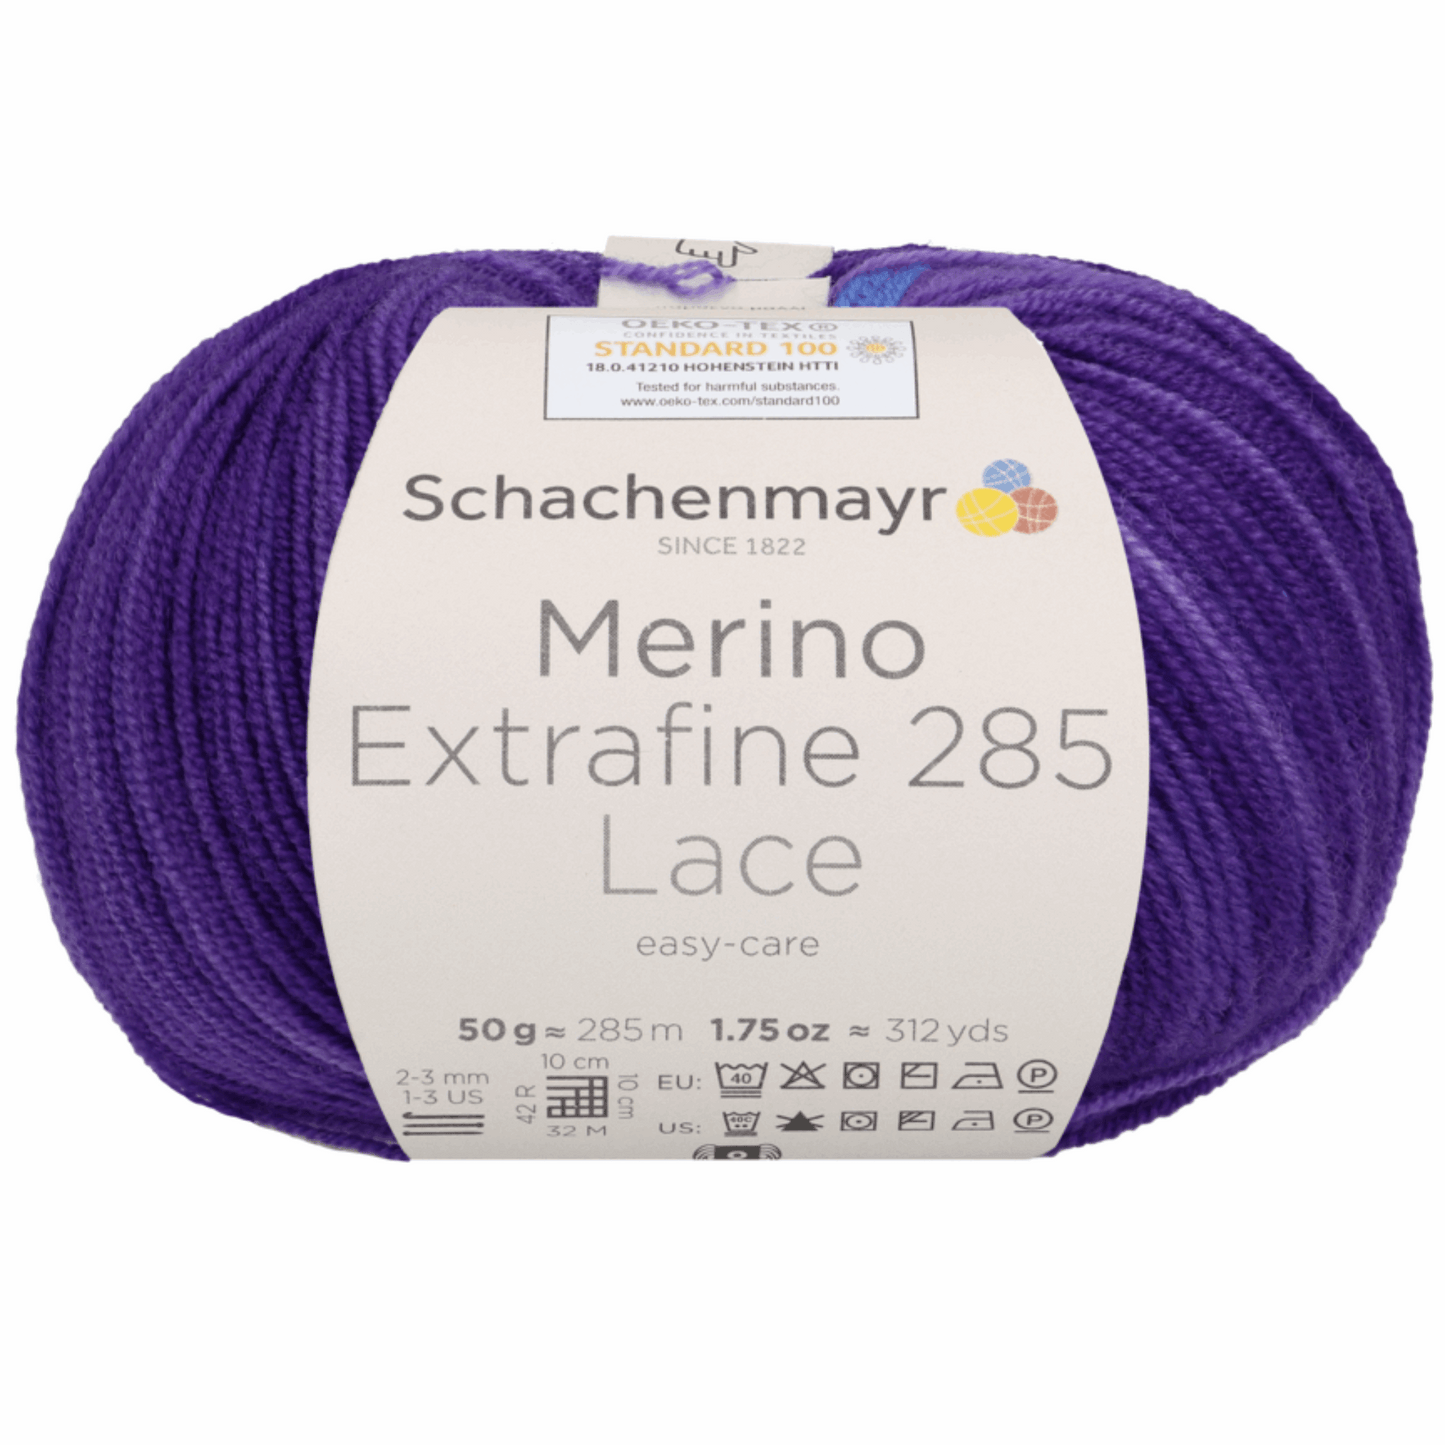 Schachenmayr Merino extrafine 285 Lace 50g, 90574, Farbe ultraviolett 608